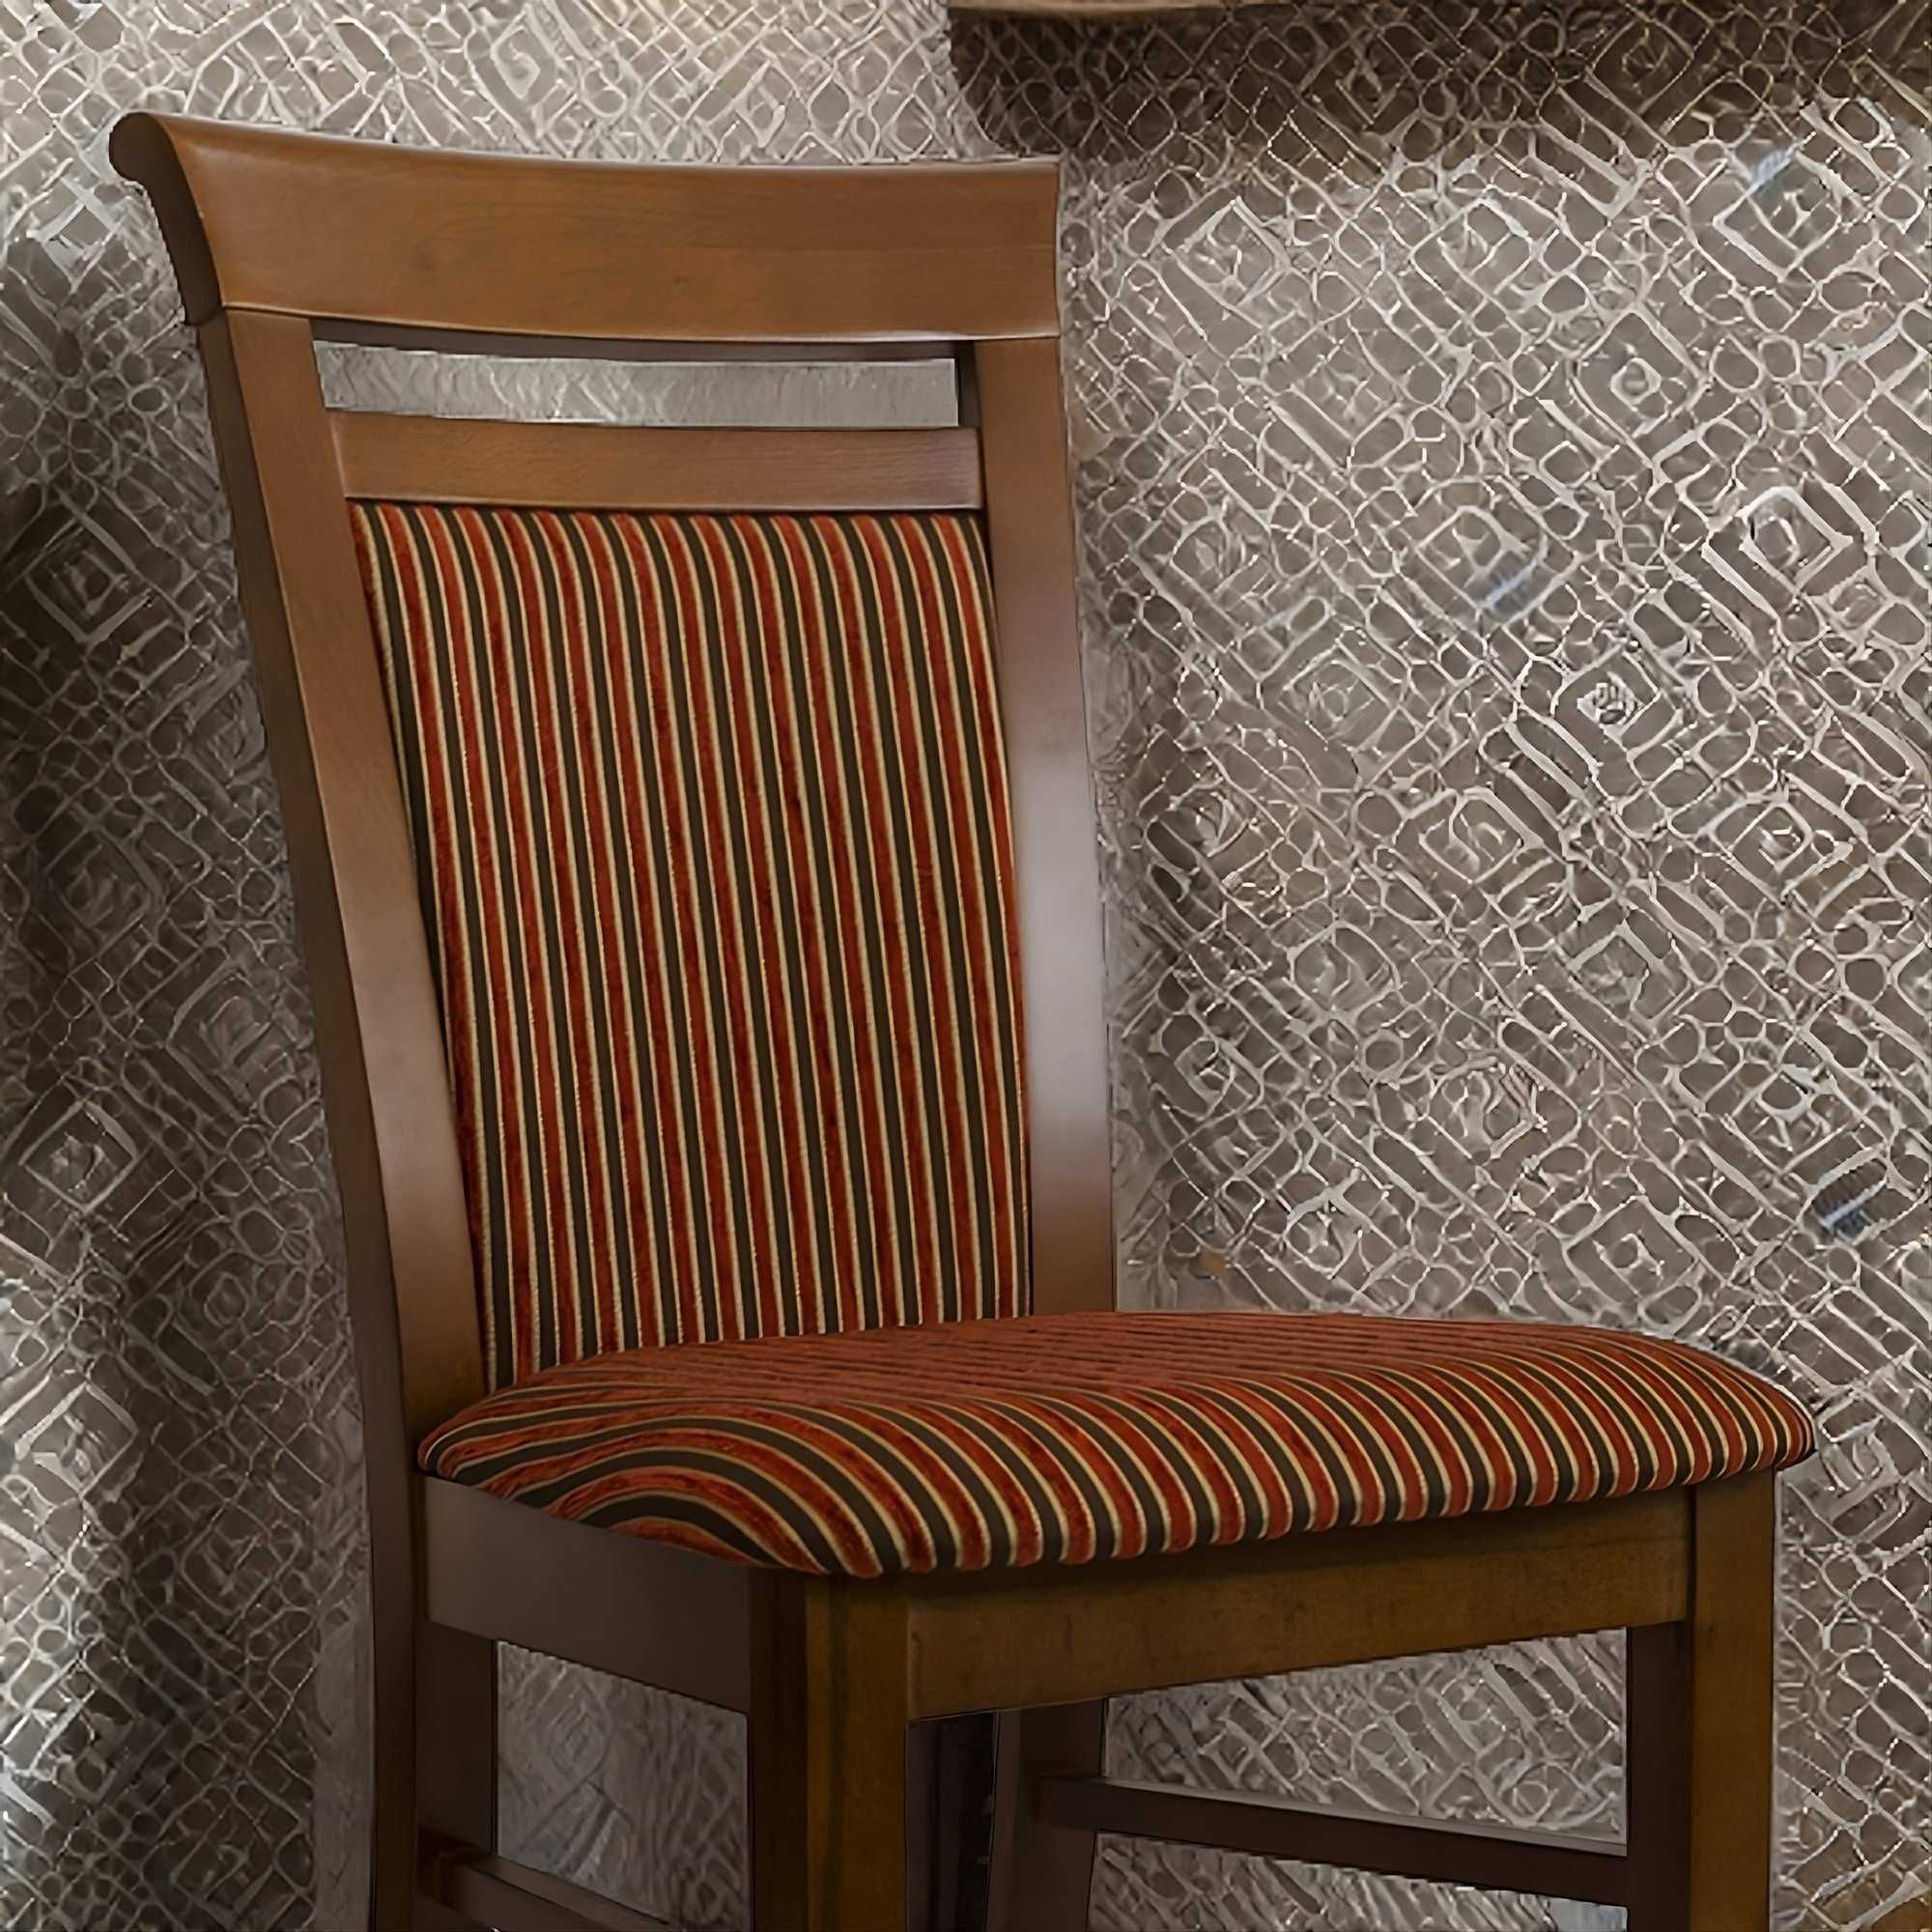 Stylowe krzesło K61 Turek drewniane tapicerowane